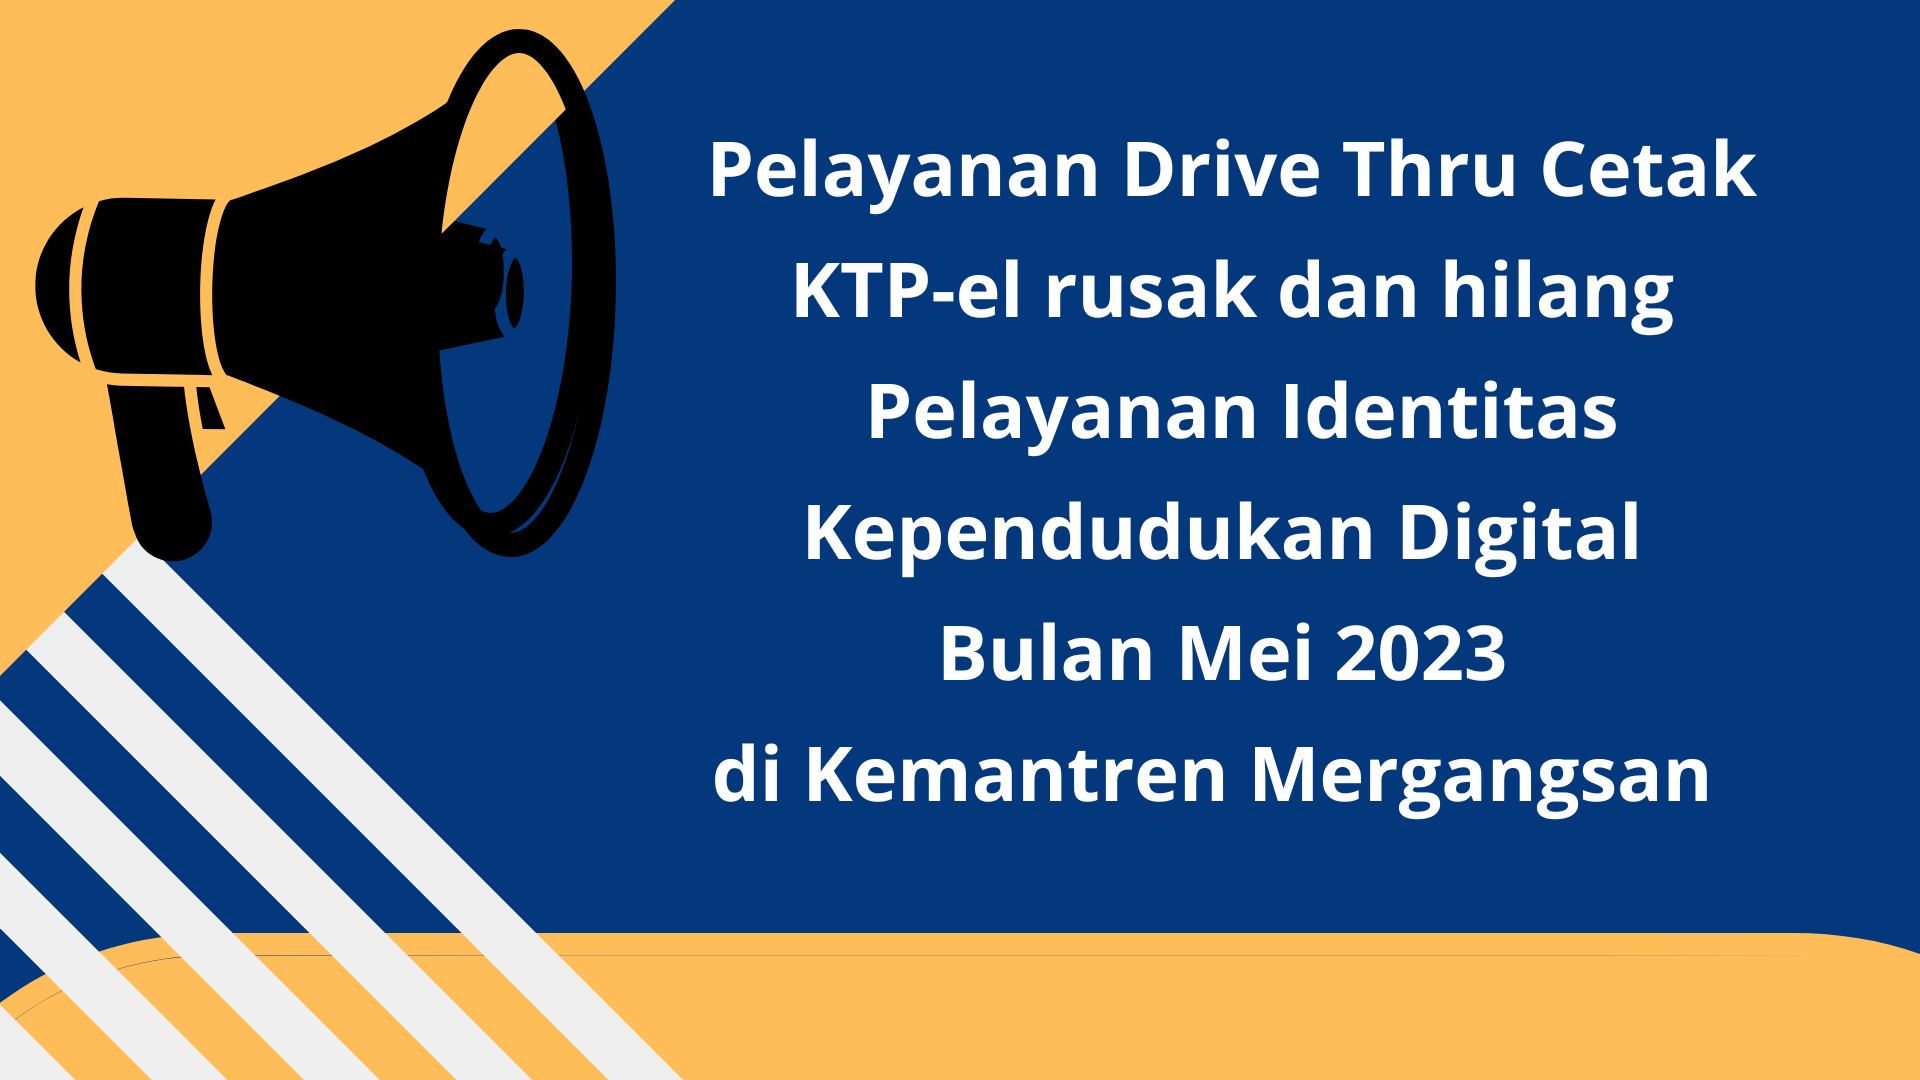 Pelayanan Drive Thru Cetak KTP-el dan Identitas Kependuudkan Digital Bulan Mei 2023 di Kemantren Mergangsan